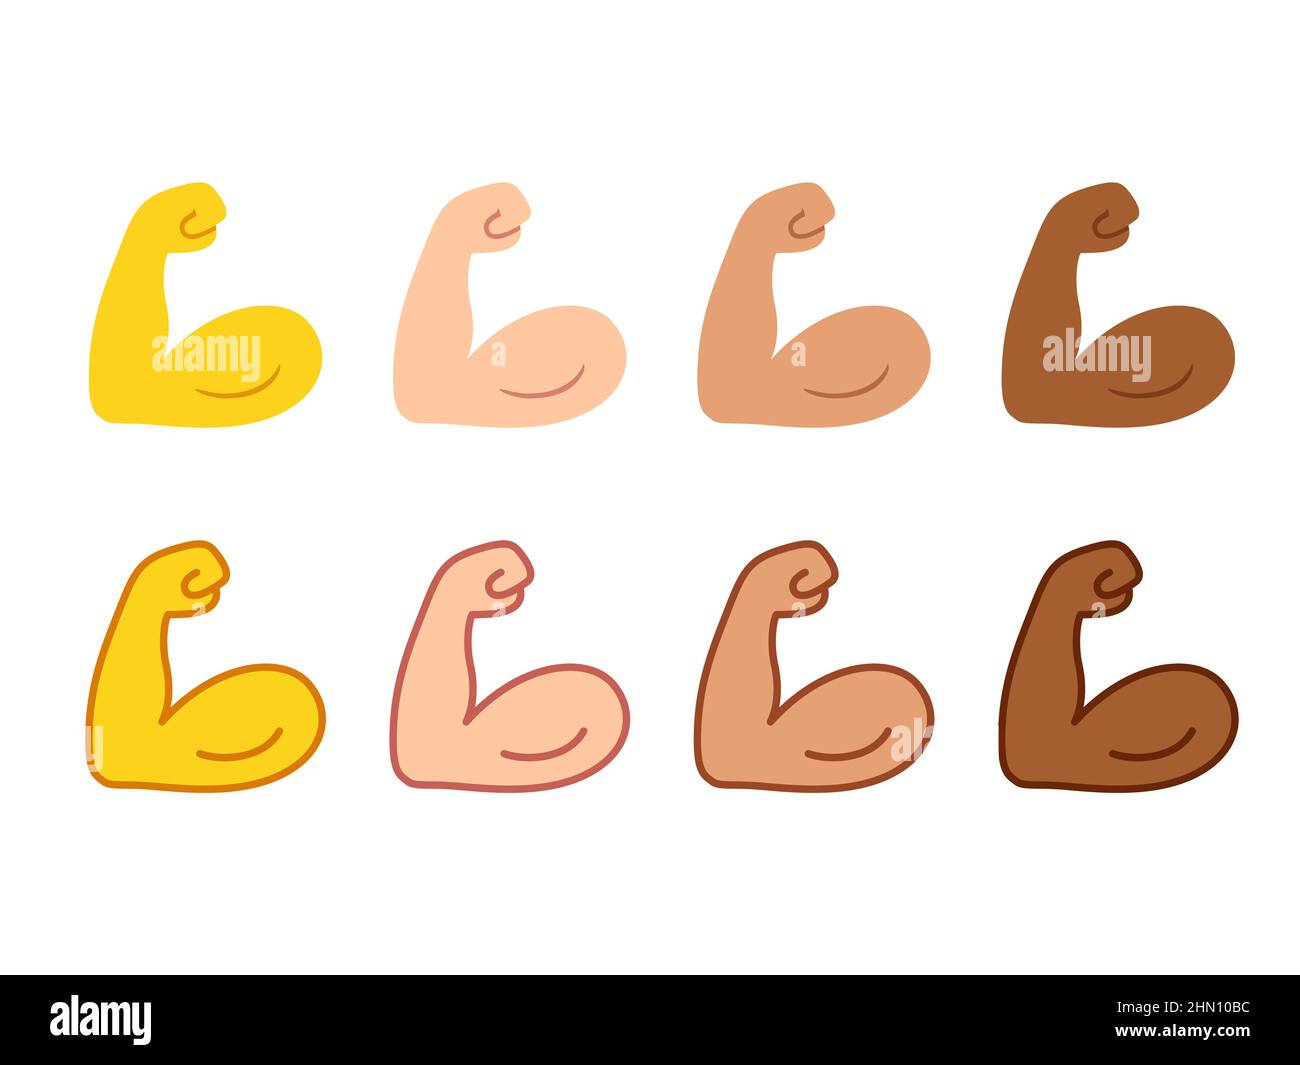 Conjunto de iconos de emoji biceps flexionados. Símbolo de brazo fuerte en dos estilos, dibujos animados delineados y planos. Color de piel diferente. Ilustración vectorial. Ilustración del Vector